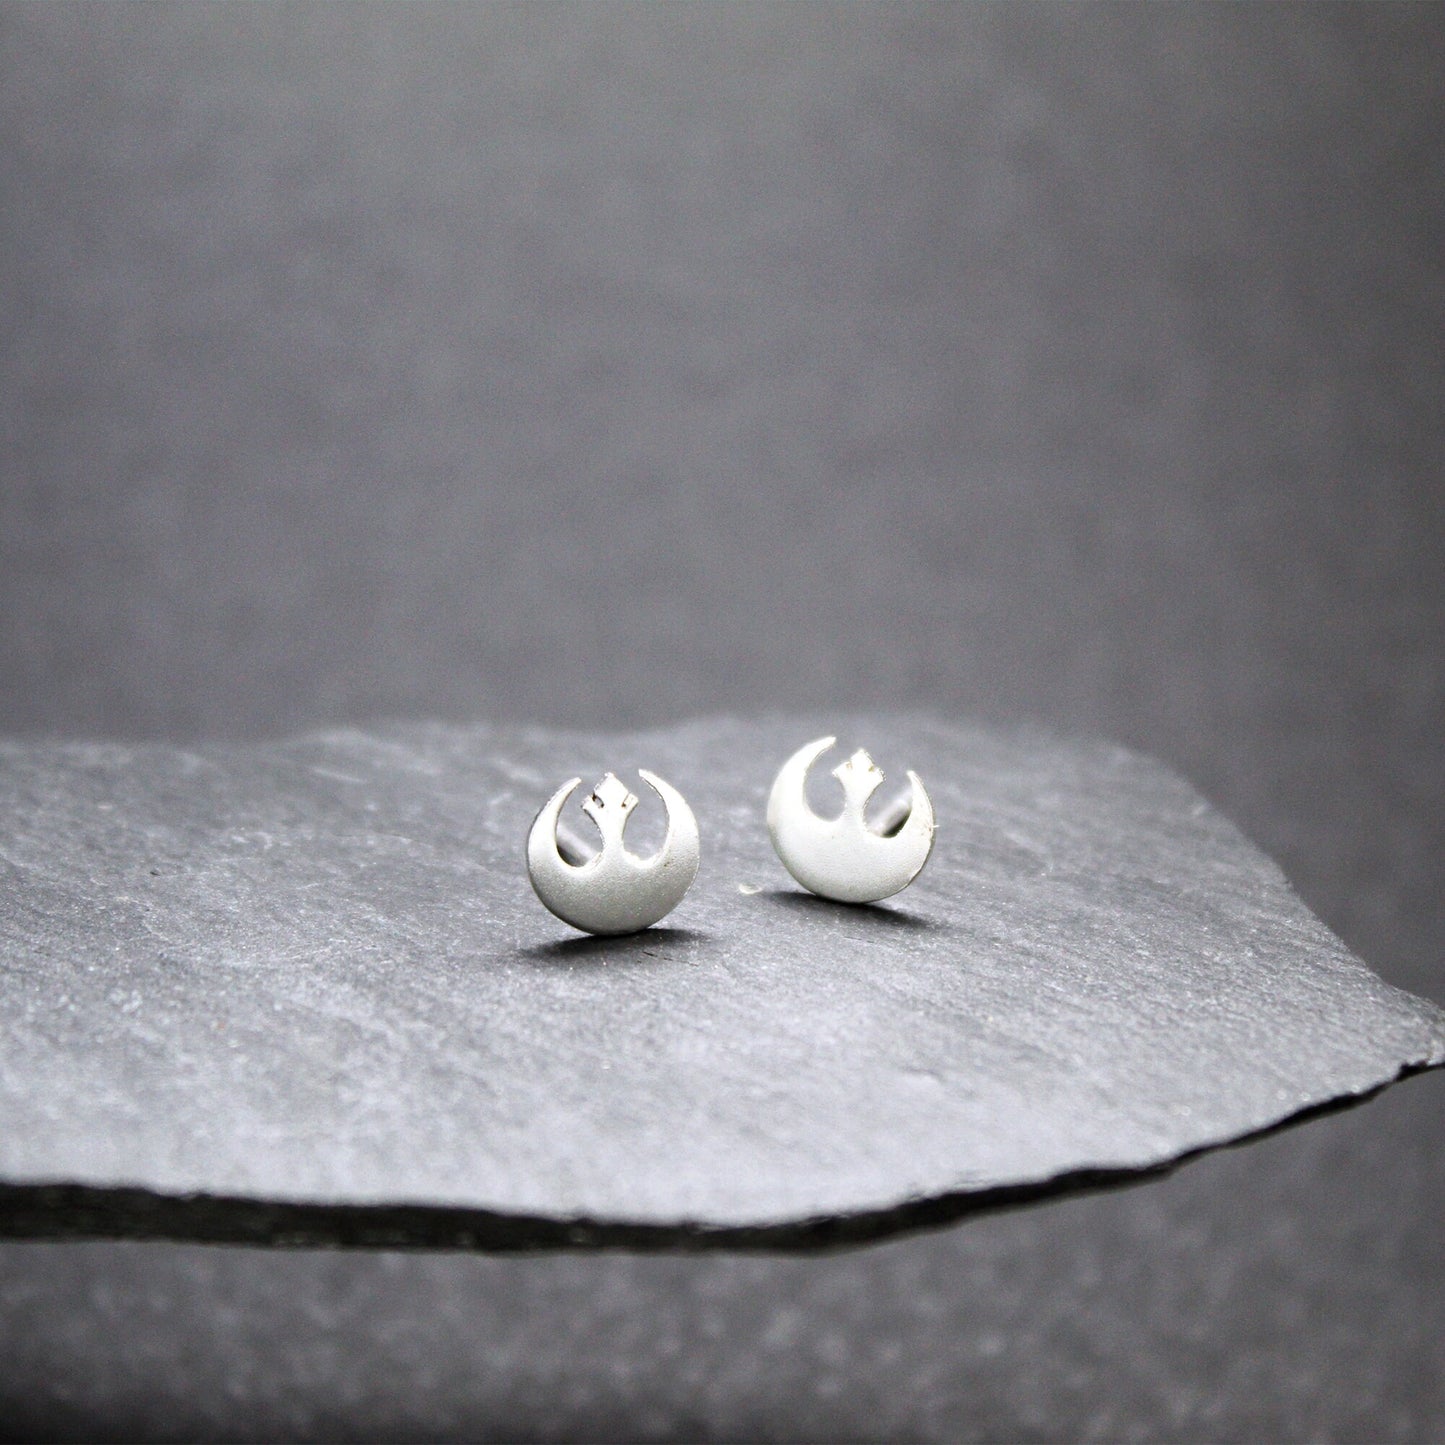 Rebel Alliance symbol Star Wars earrings in 925 silver